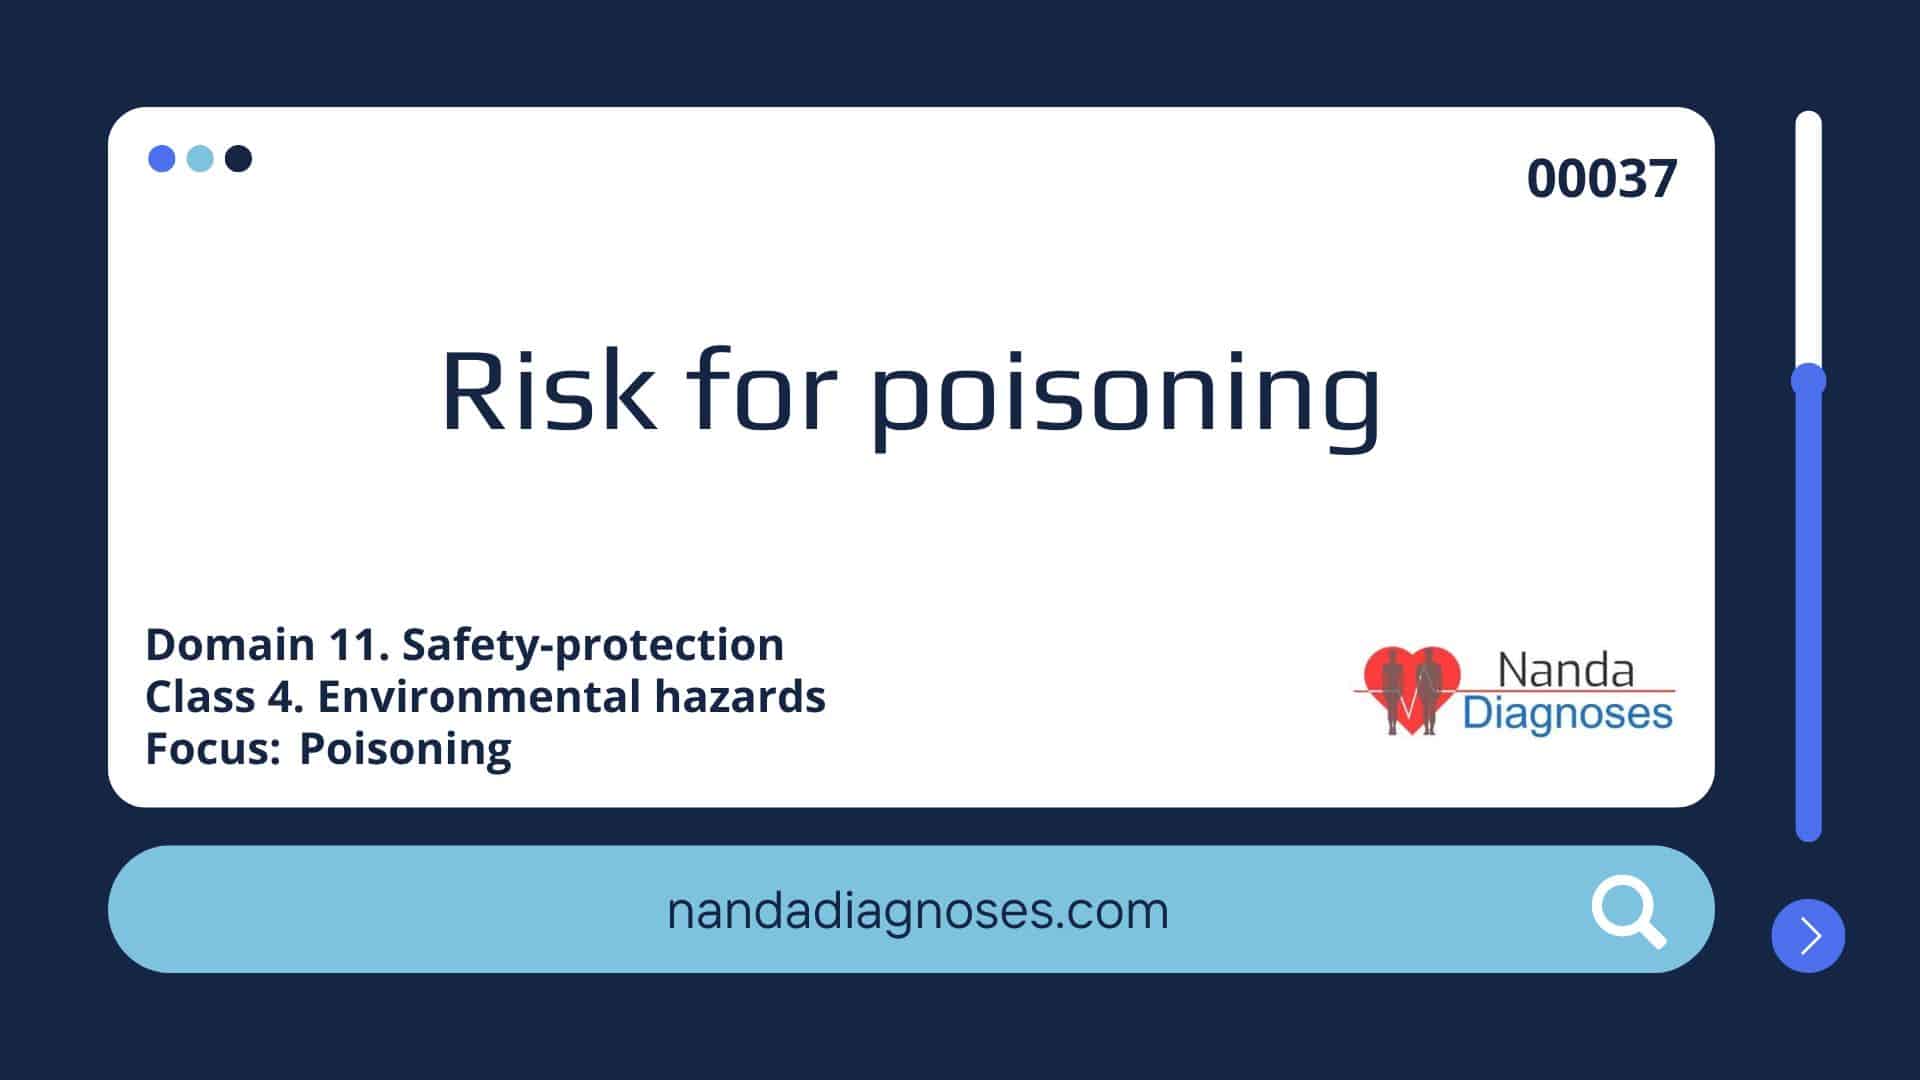 Nursing diagnosis Risk for poisoning